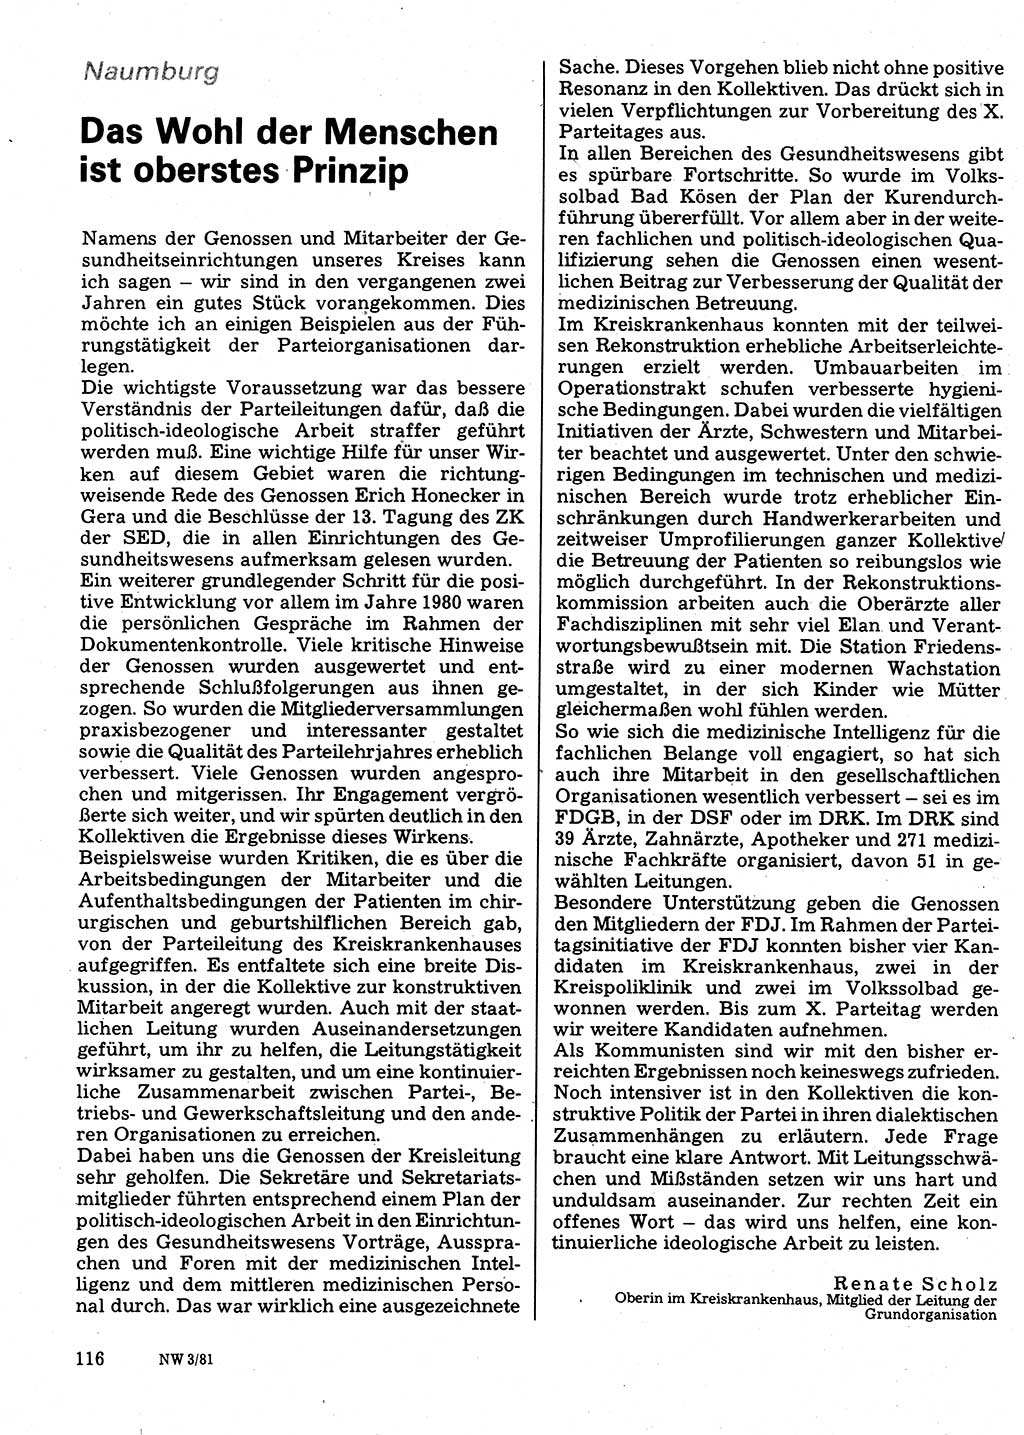 Neuer Weg (NW), Organ des Zentralkomitees (ZK) der SED (Sozialistische Einheitspartei Deutschlands) für Fragen des Parteilebens, 36. Jahrgang [Deutsche Demokratische Republik (DDR)] 1981, Seite 116 (NW ZK SED DDR 1981, S. 116)